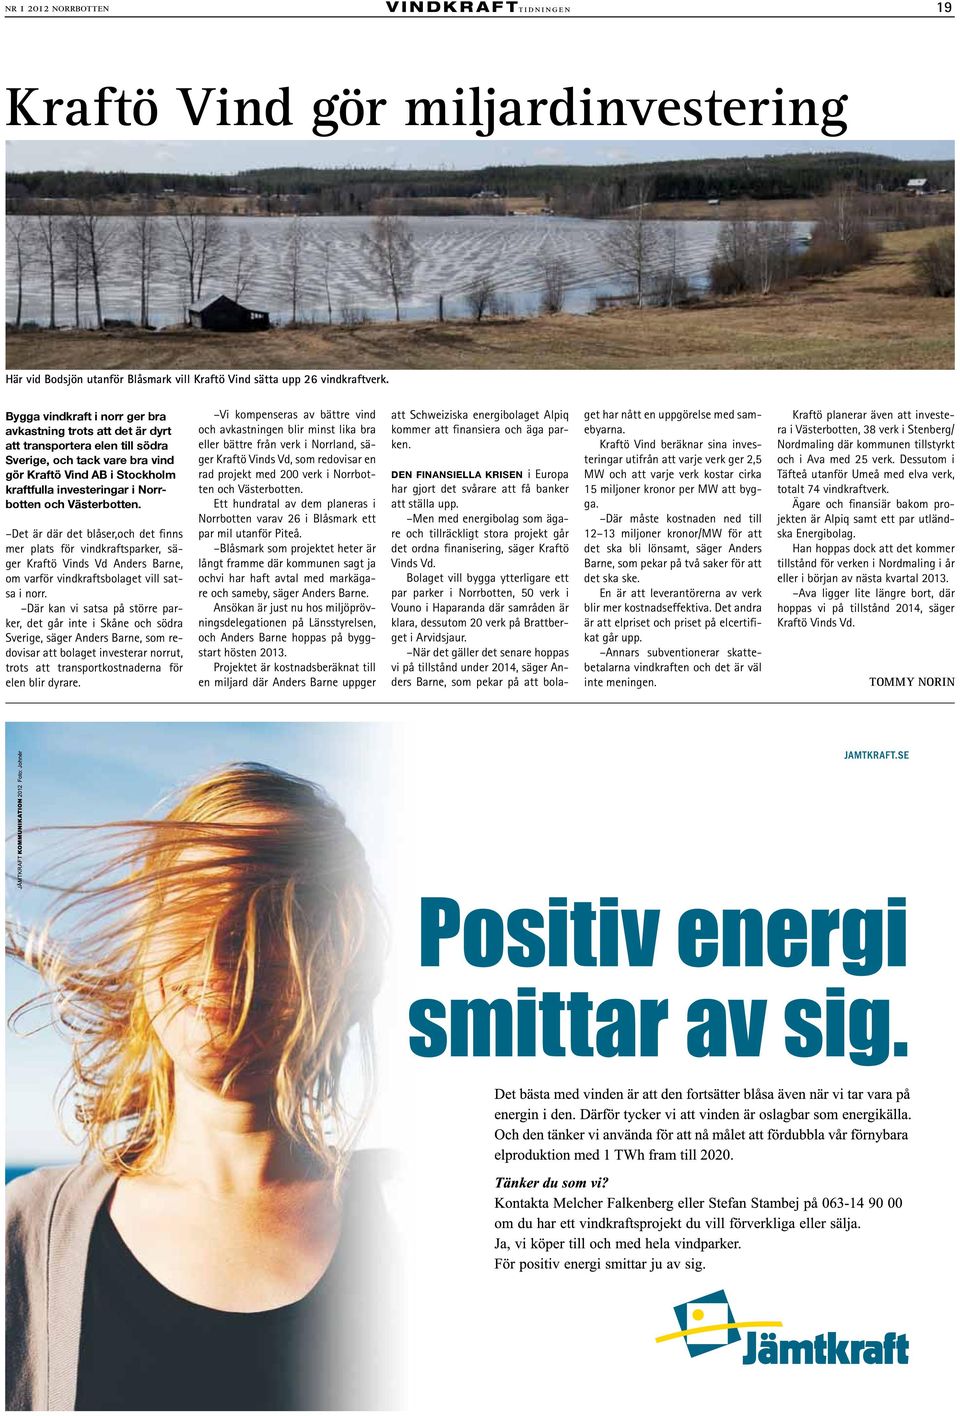 och Västerbotten. Det är där det blåser,och det finns mer plats för vindkraftsparker, säger Kraftö Vinds Vd Anders Barne, om varför vindkraftsbolaget vill satsa i norr.